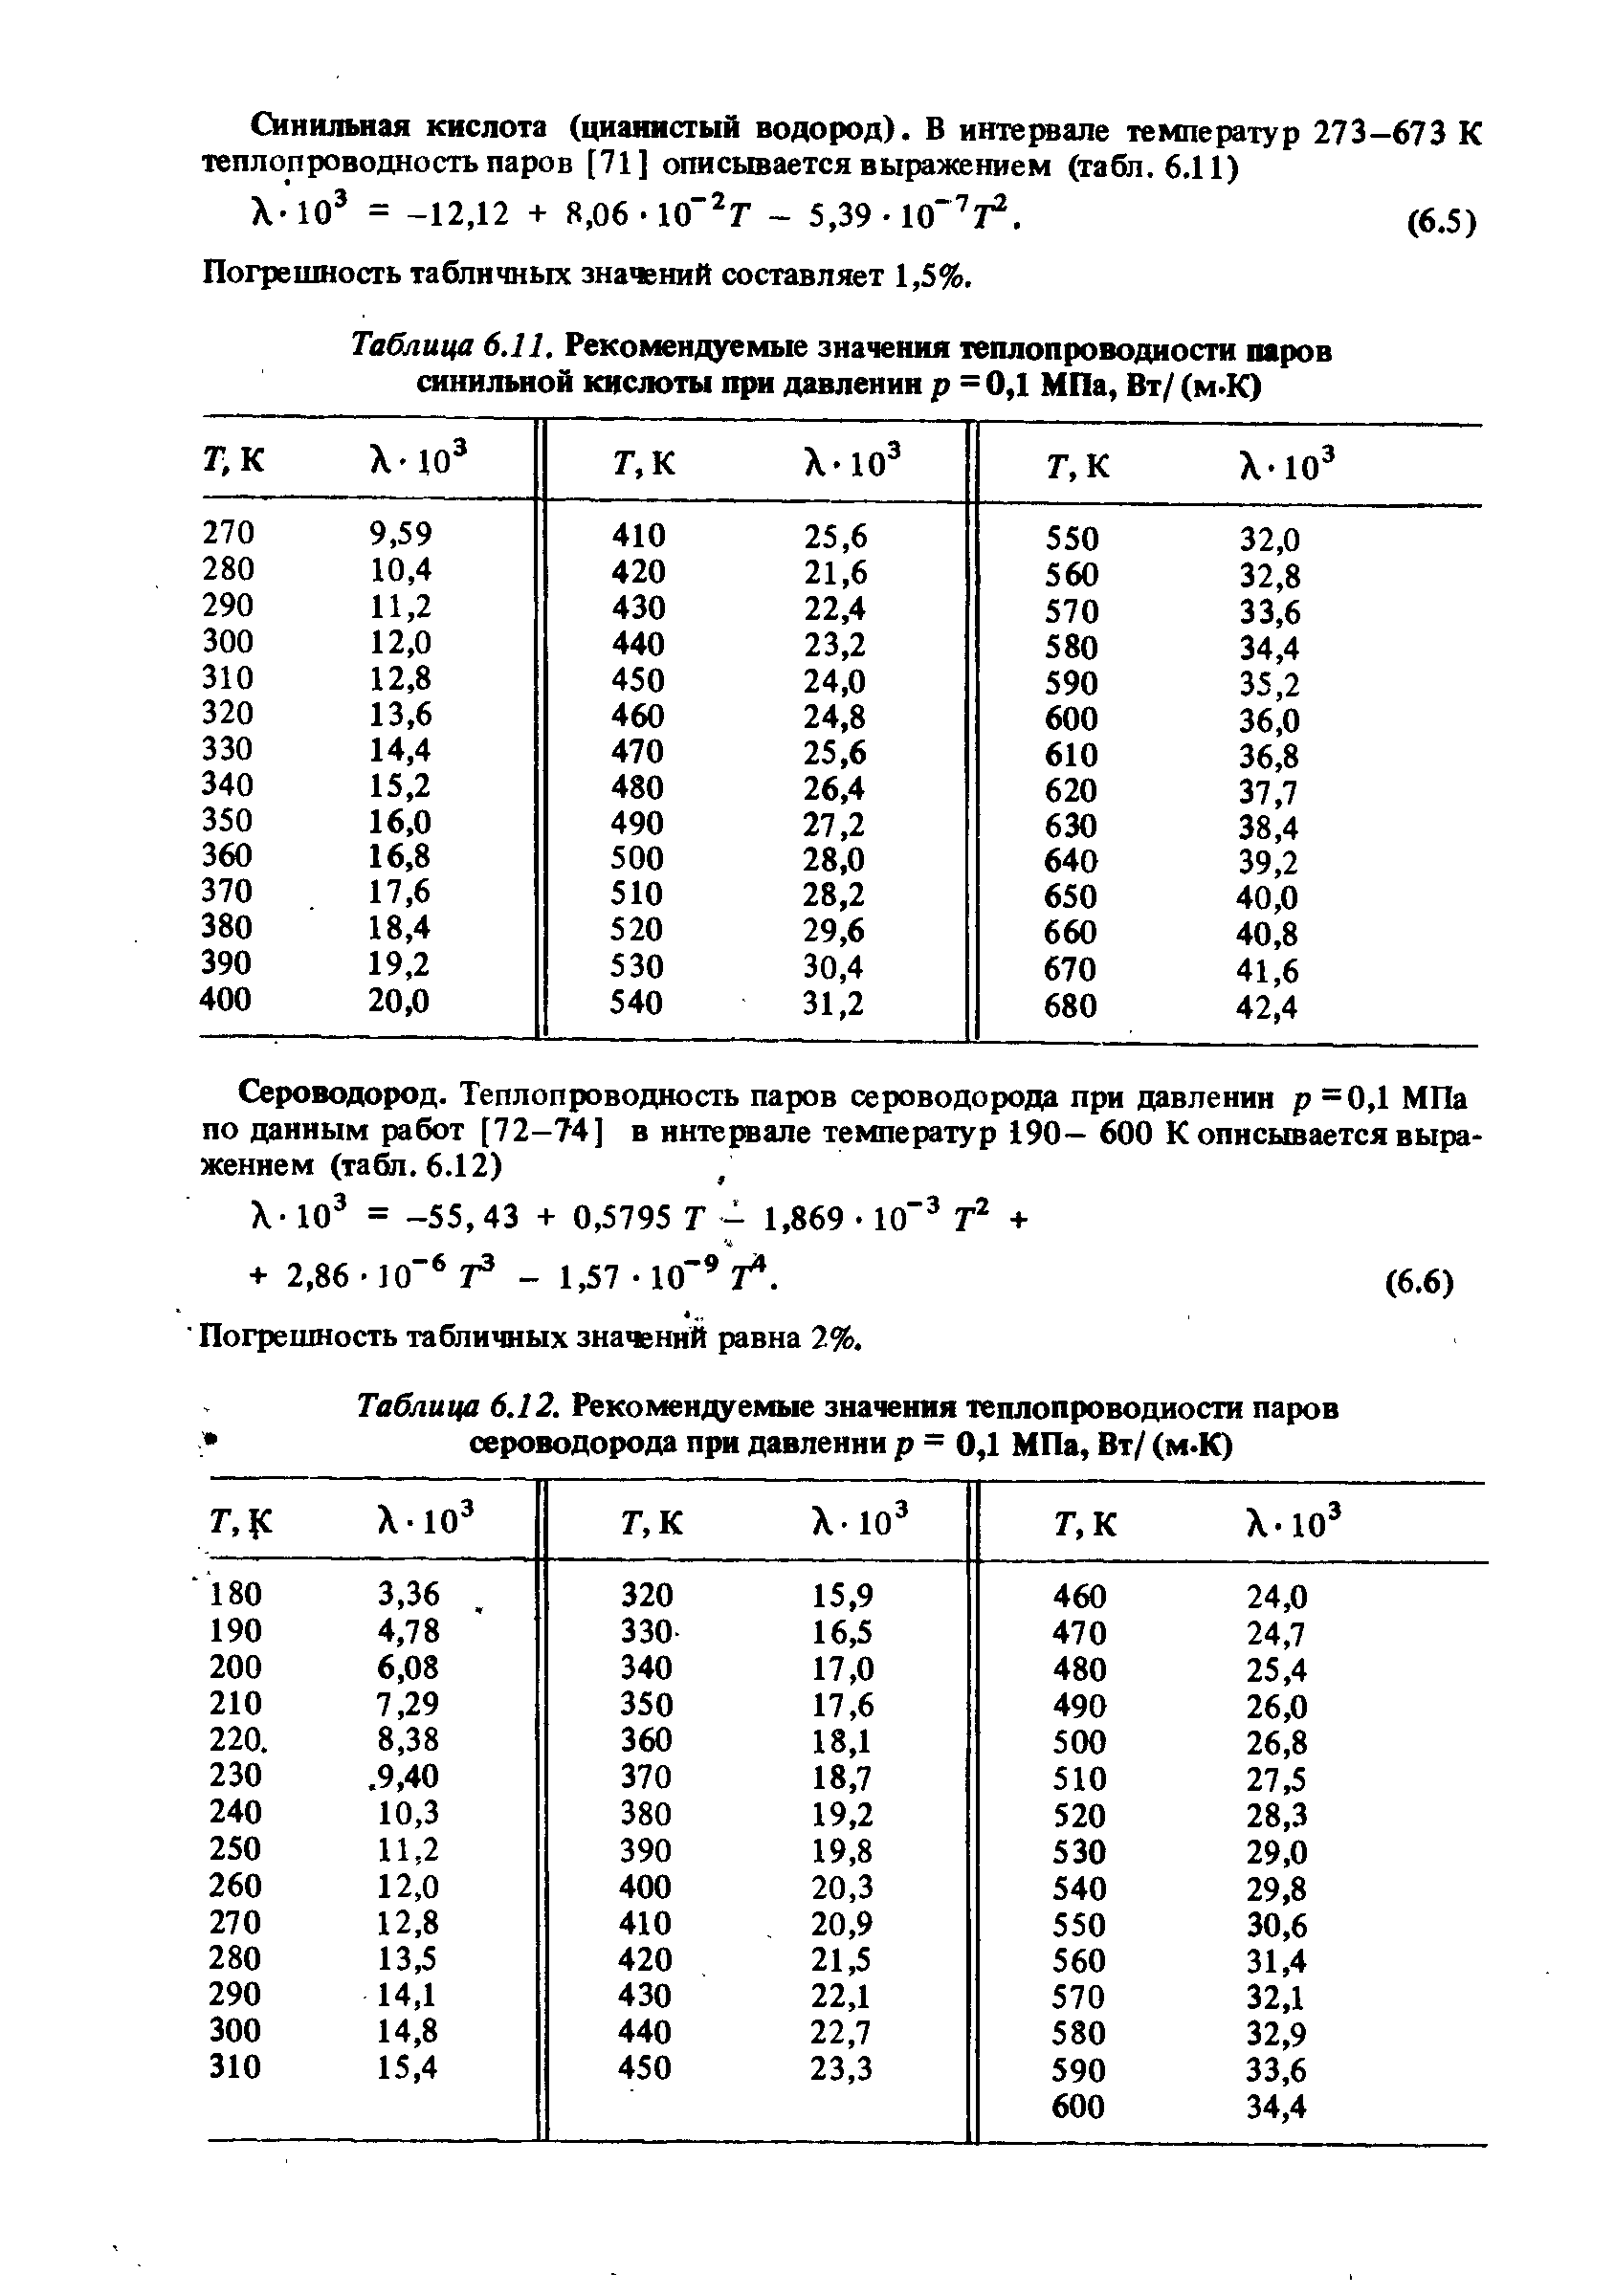 Таблица 6.11, Рекомендуемые значения теплопроводиости паров синильной кислоты при давлении р = 0,1 МПа, Вт/ (м.К)
